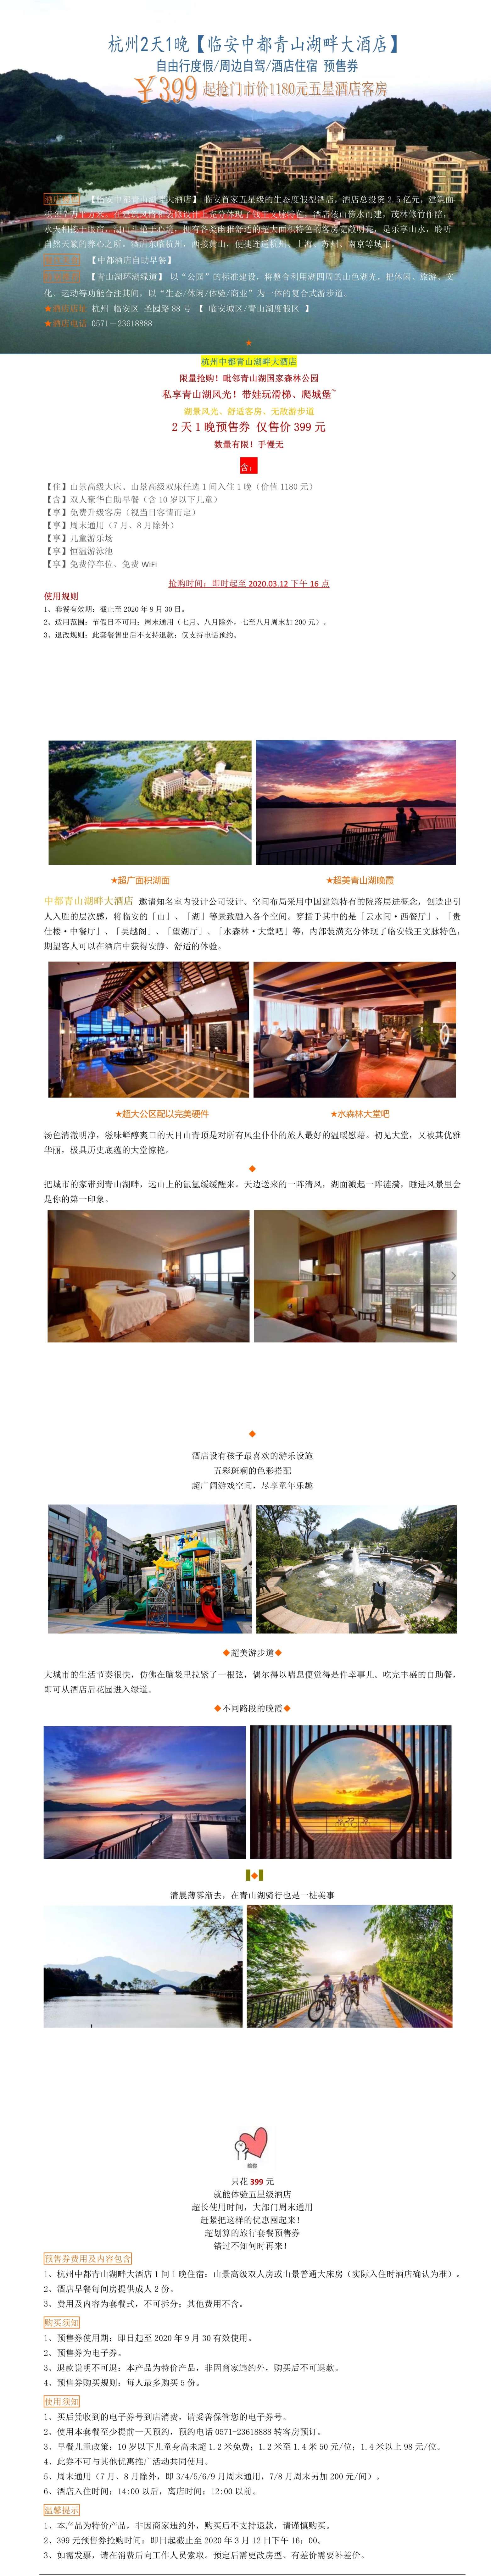 中都青山湖畔酒店3.12预售信息.jpg